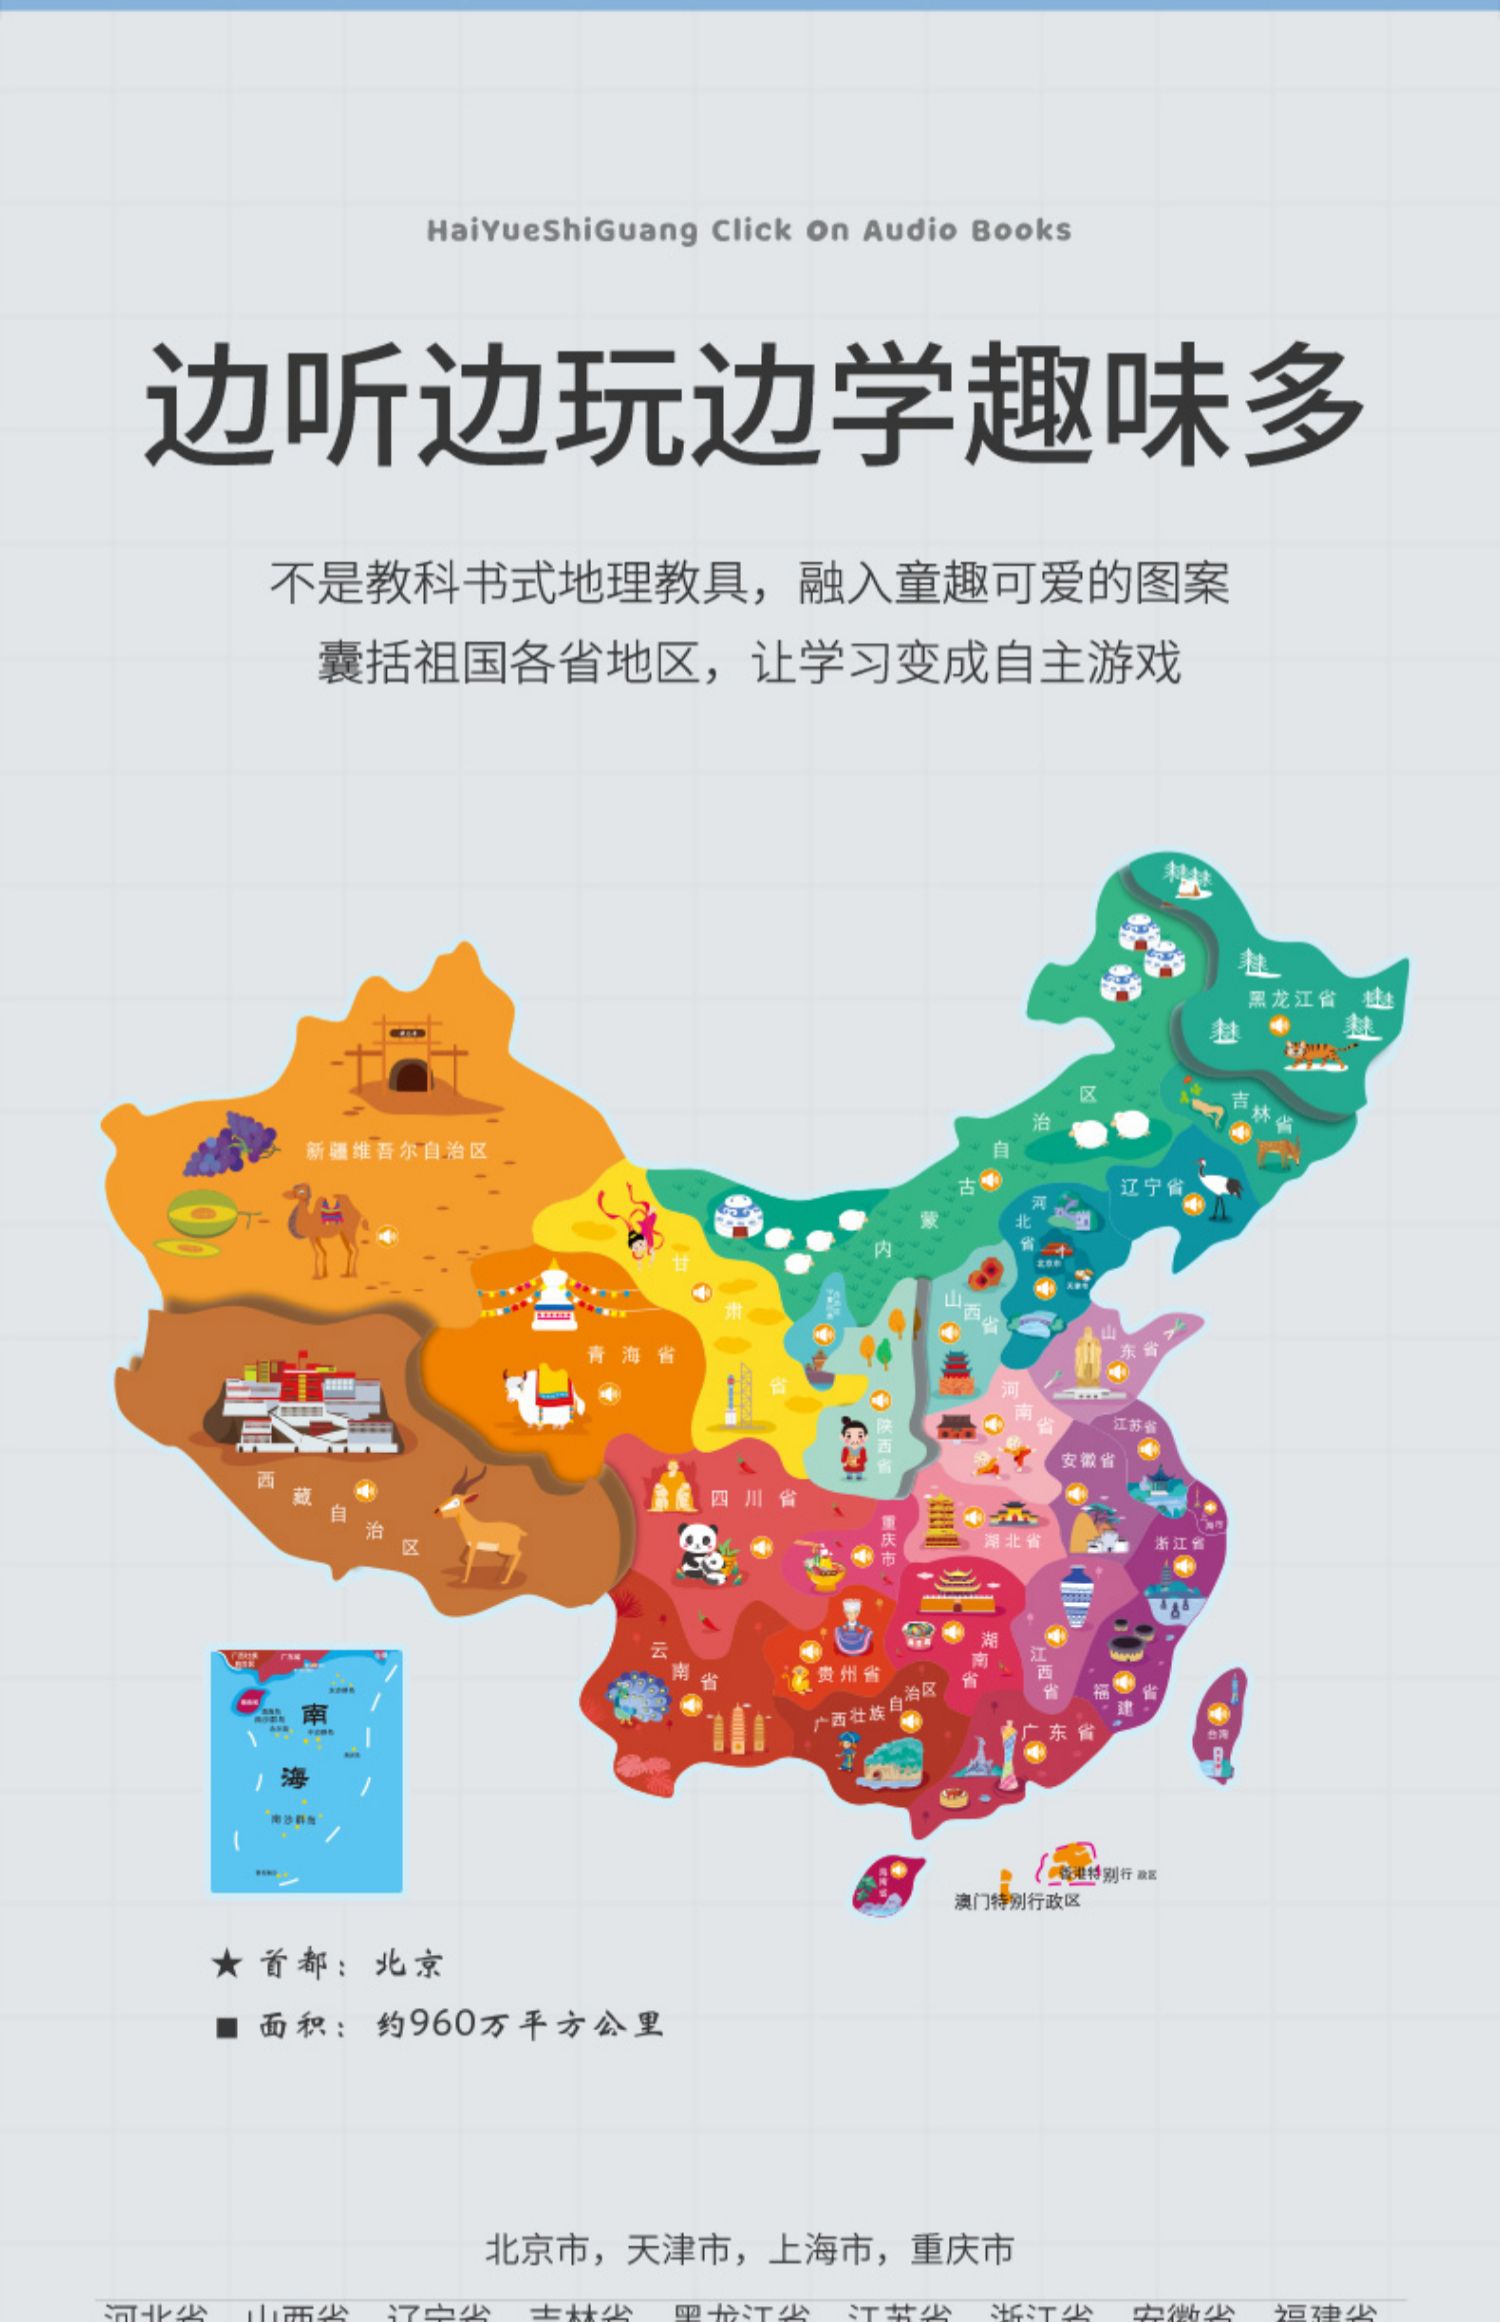 中国地图的样子可爱图片